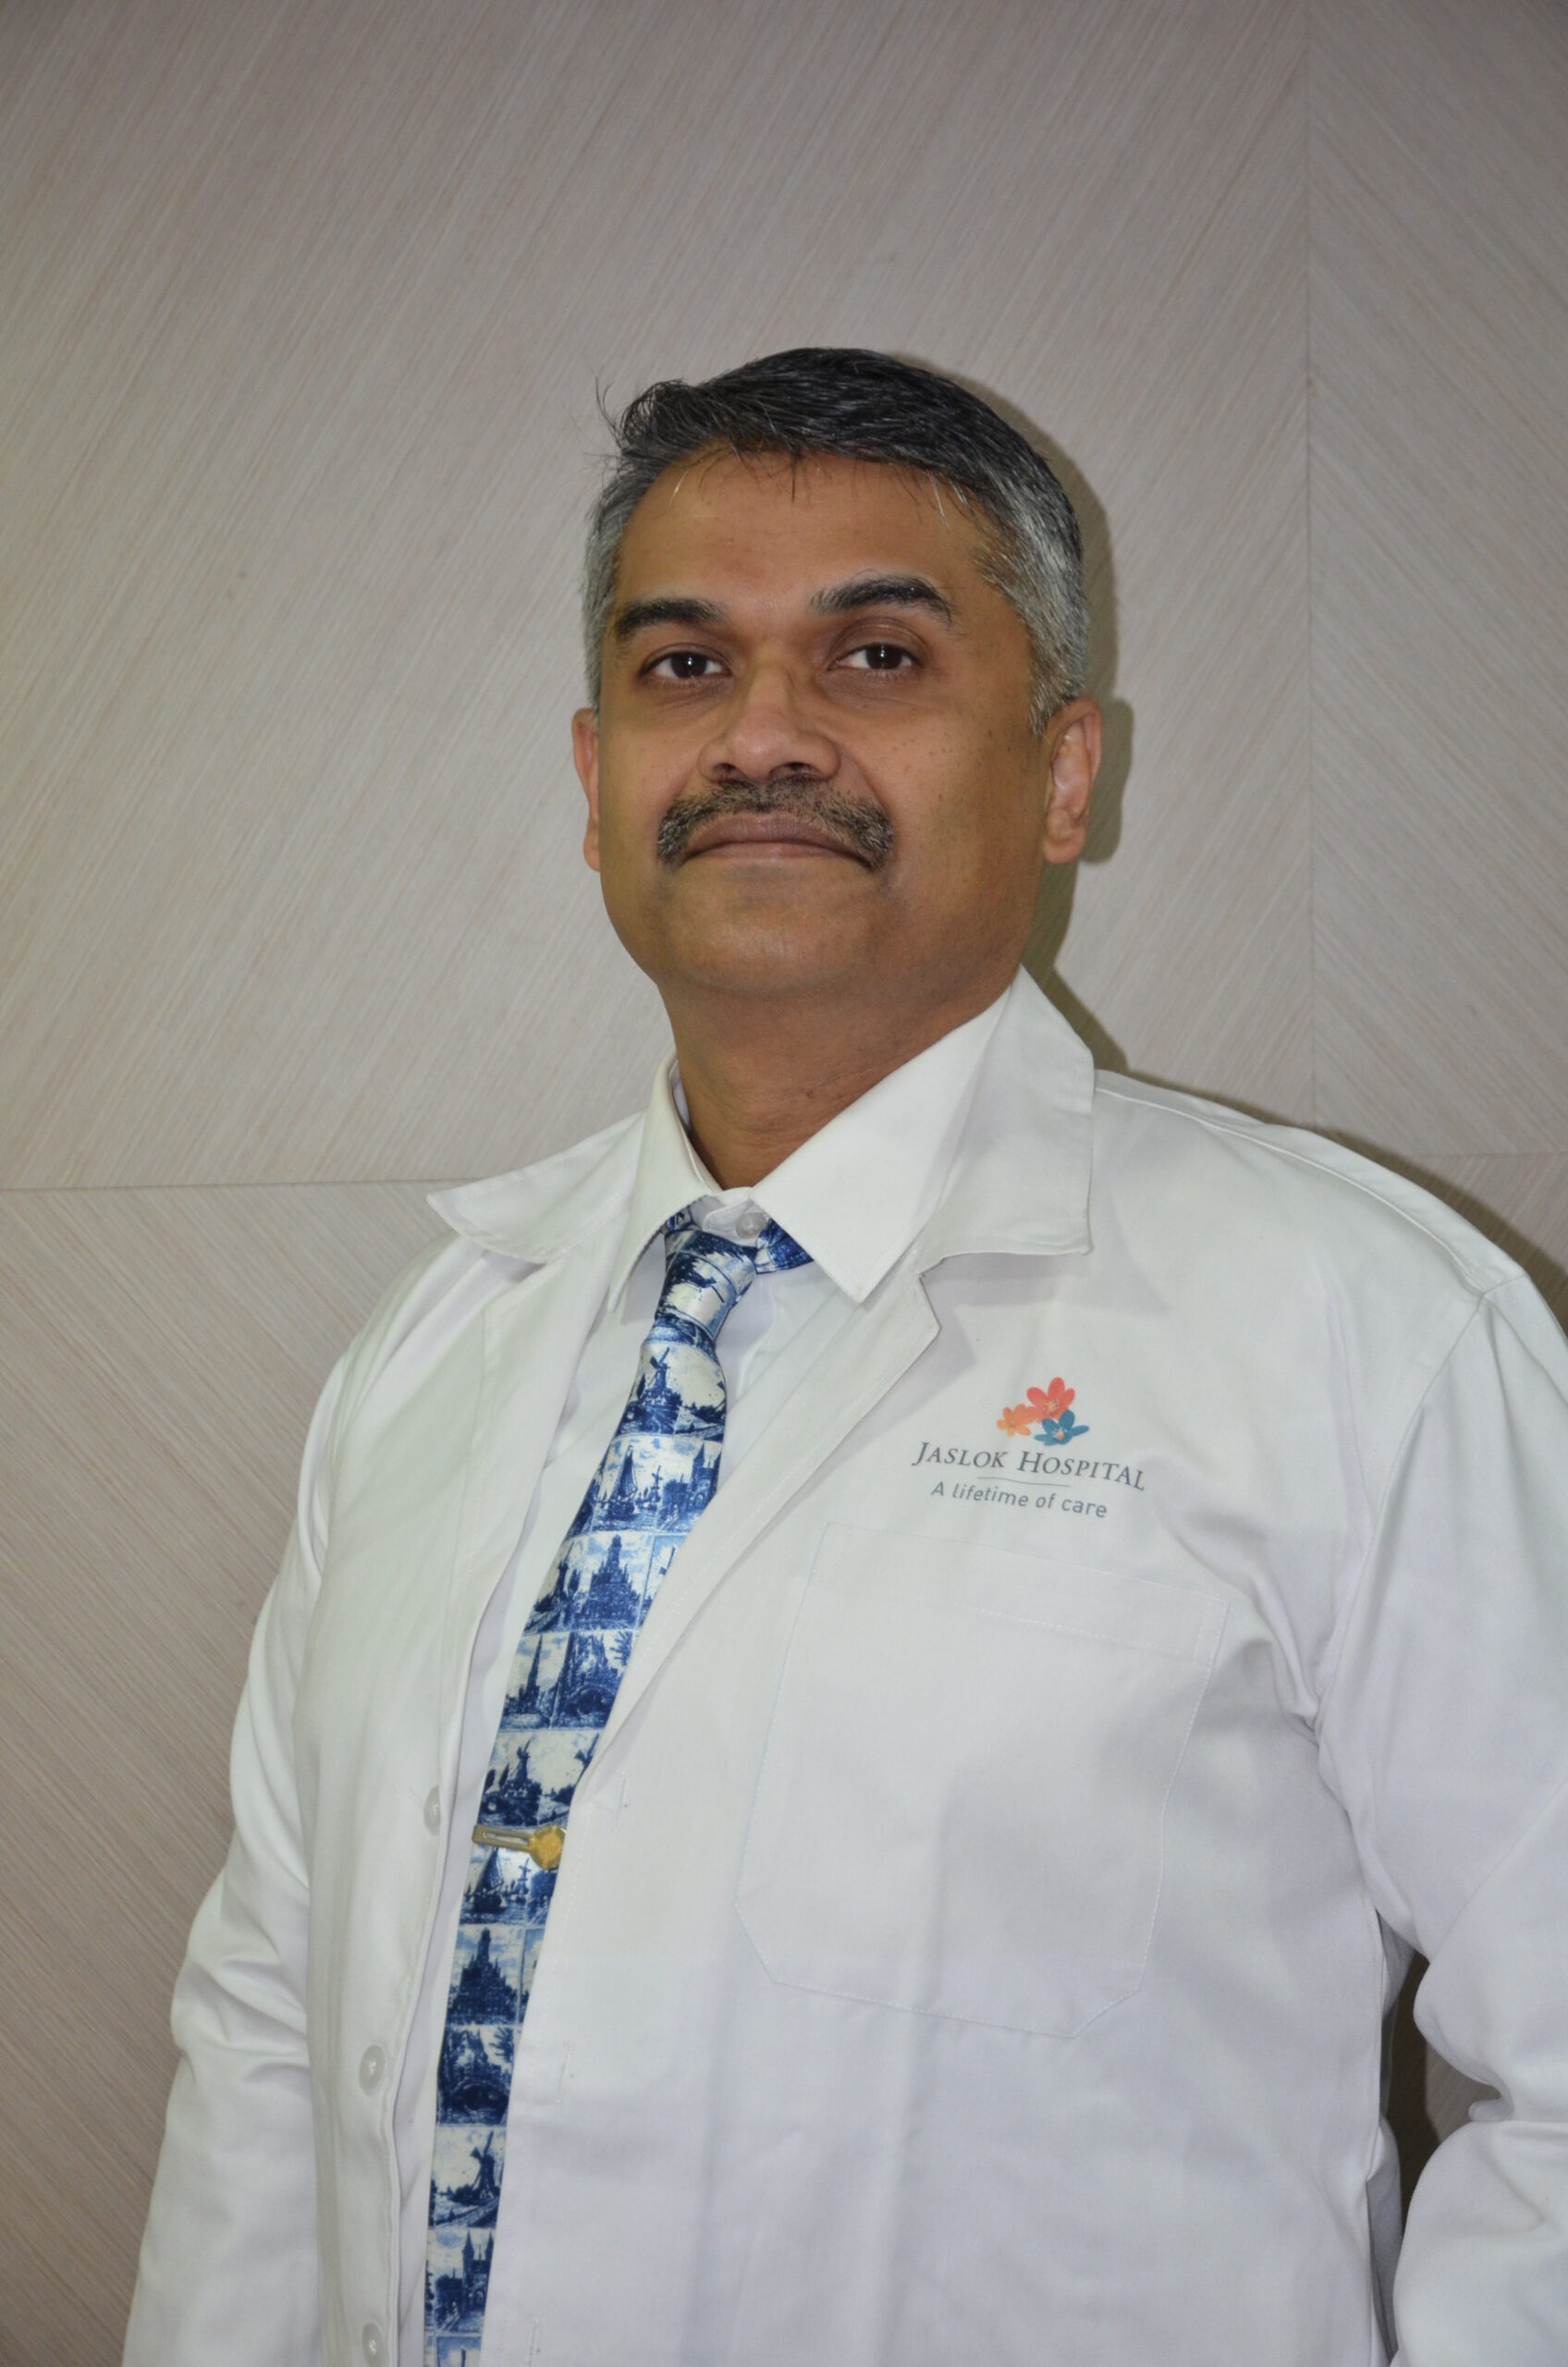 الدكتور هيمانت يتمتع بخبرة أكثر من ٢٠ عاما في جراحة القلب وزراعة القلب والرئة لدى افضل مستشفى القلب في مومباي، الهند، تشيناي، نيودلهي، كوتشي، كيرلا، بنغالور